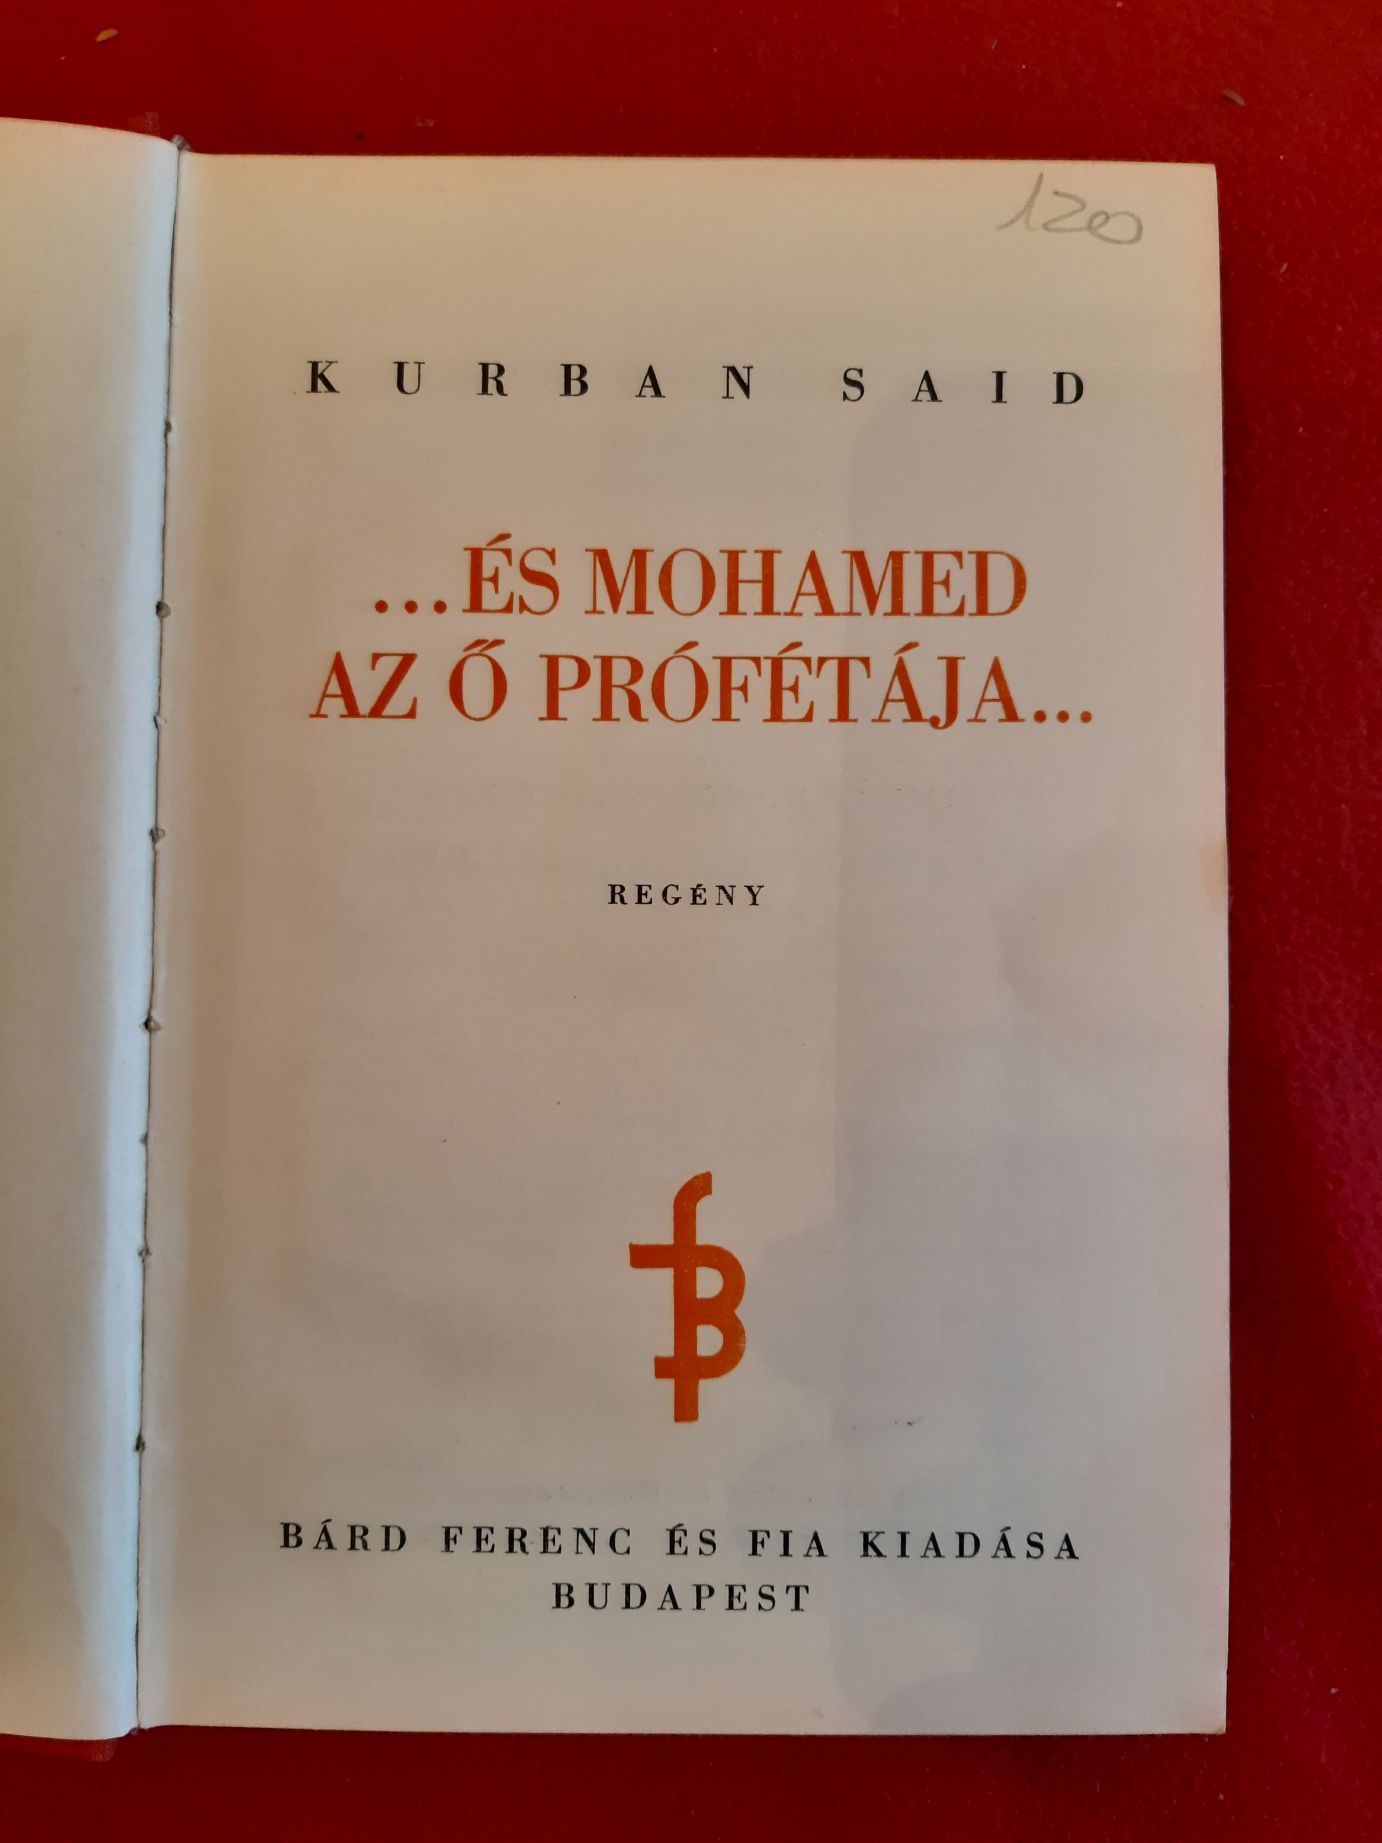 … és Mohamed az Ő prófétája